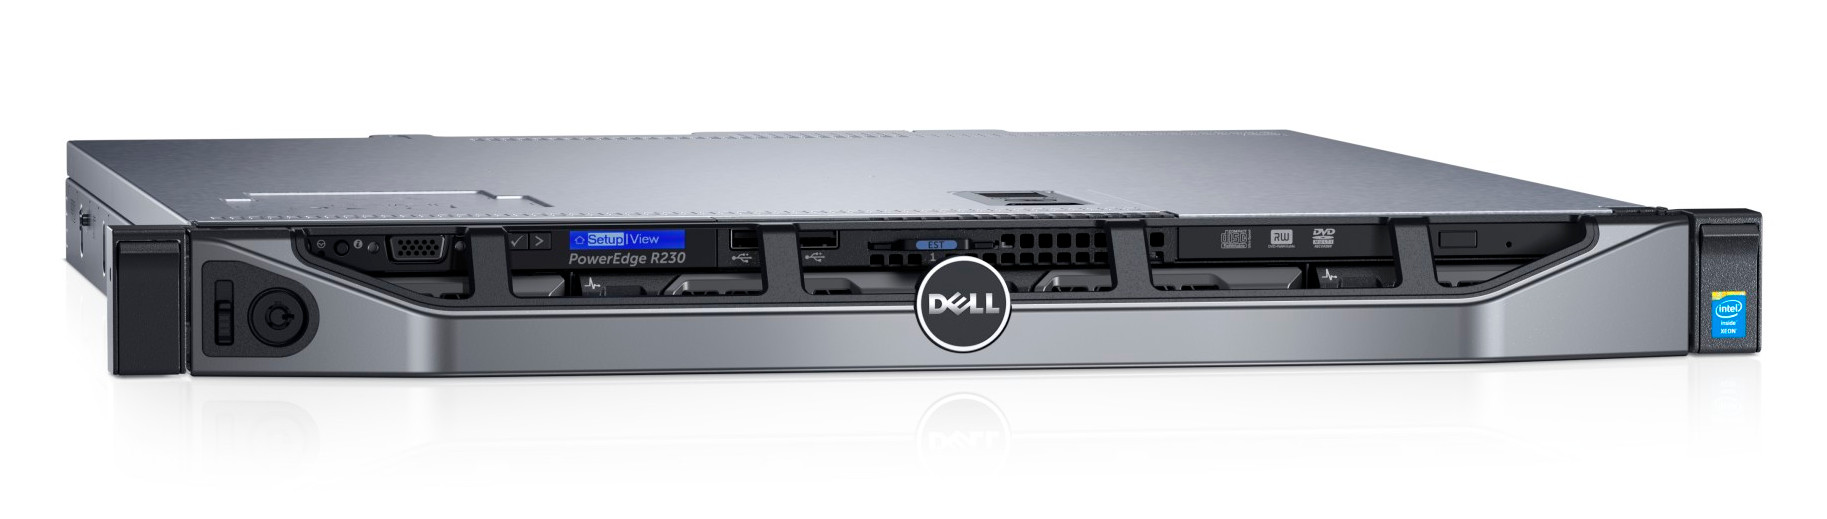 Сервер Dell PowerEdge R230 1xE3-1270v6 2x16Gb 2RUD x4 1x1Tb 7.2K 3.5" SATA RW H730 iD8En+PC 1G 2P 1x250W 3Y NBD Bezel Dell EMC (210-AEXB-62)